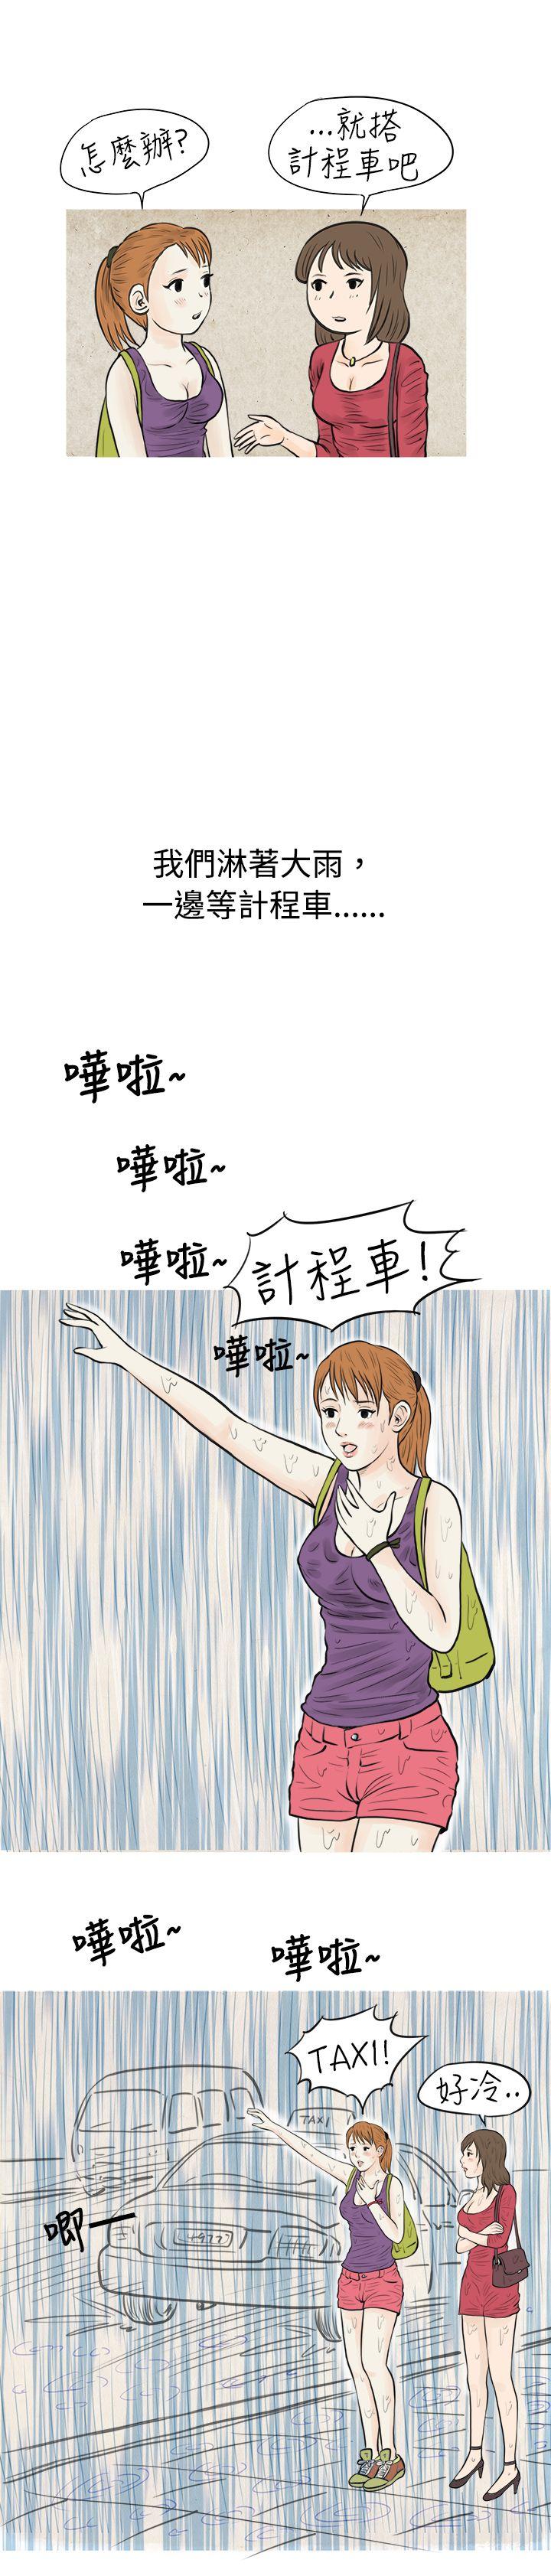 秘密Story  在弘大夜店的豔遇故事(上) 漫画图片8.jpg